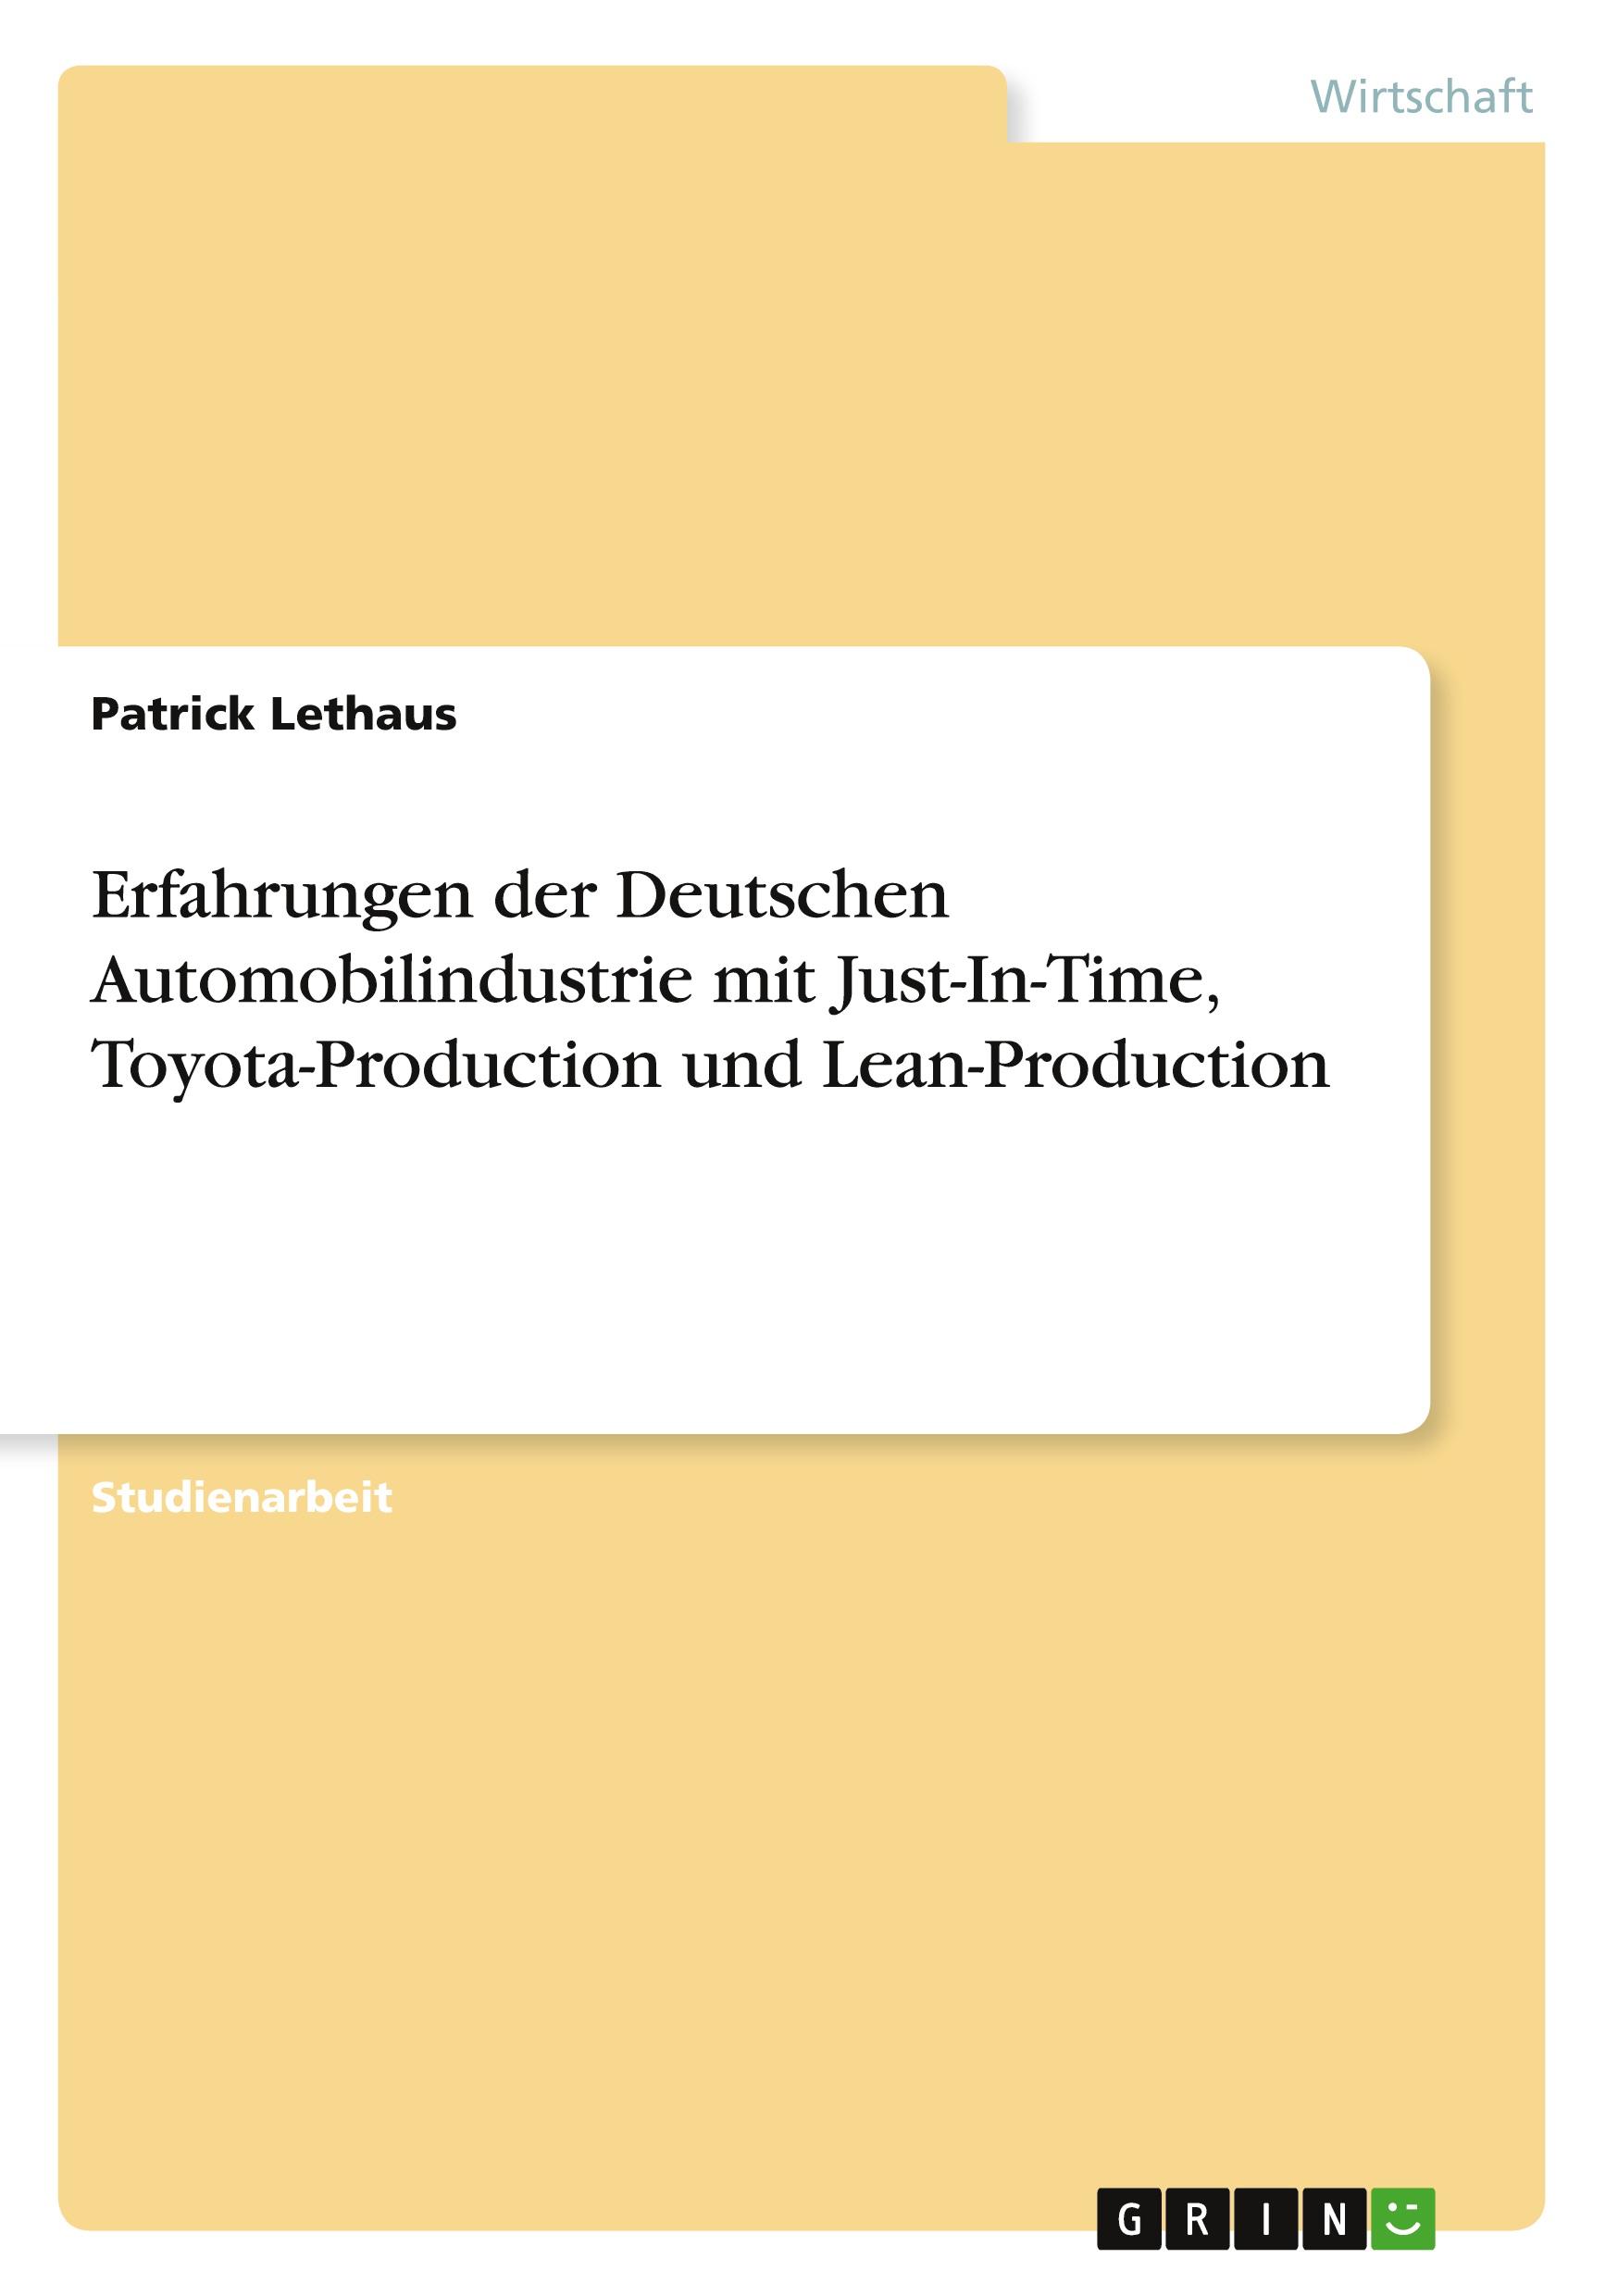 Erfahrungen der Deutschen Automobilindustrie mit Just-In-Time, Toyota-Production und Lean-Production | Patrick Lethaus | Taschenbuch | Akademische Schriftenreihe Bd. V162247 | Booklet | Deutsch | 2010 - Lethaus, Patrick